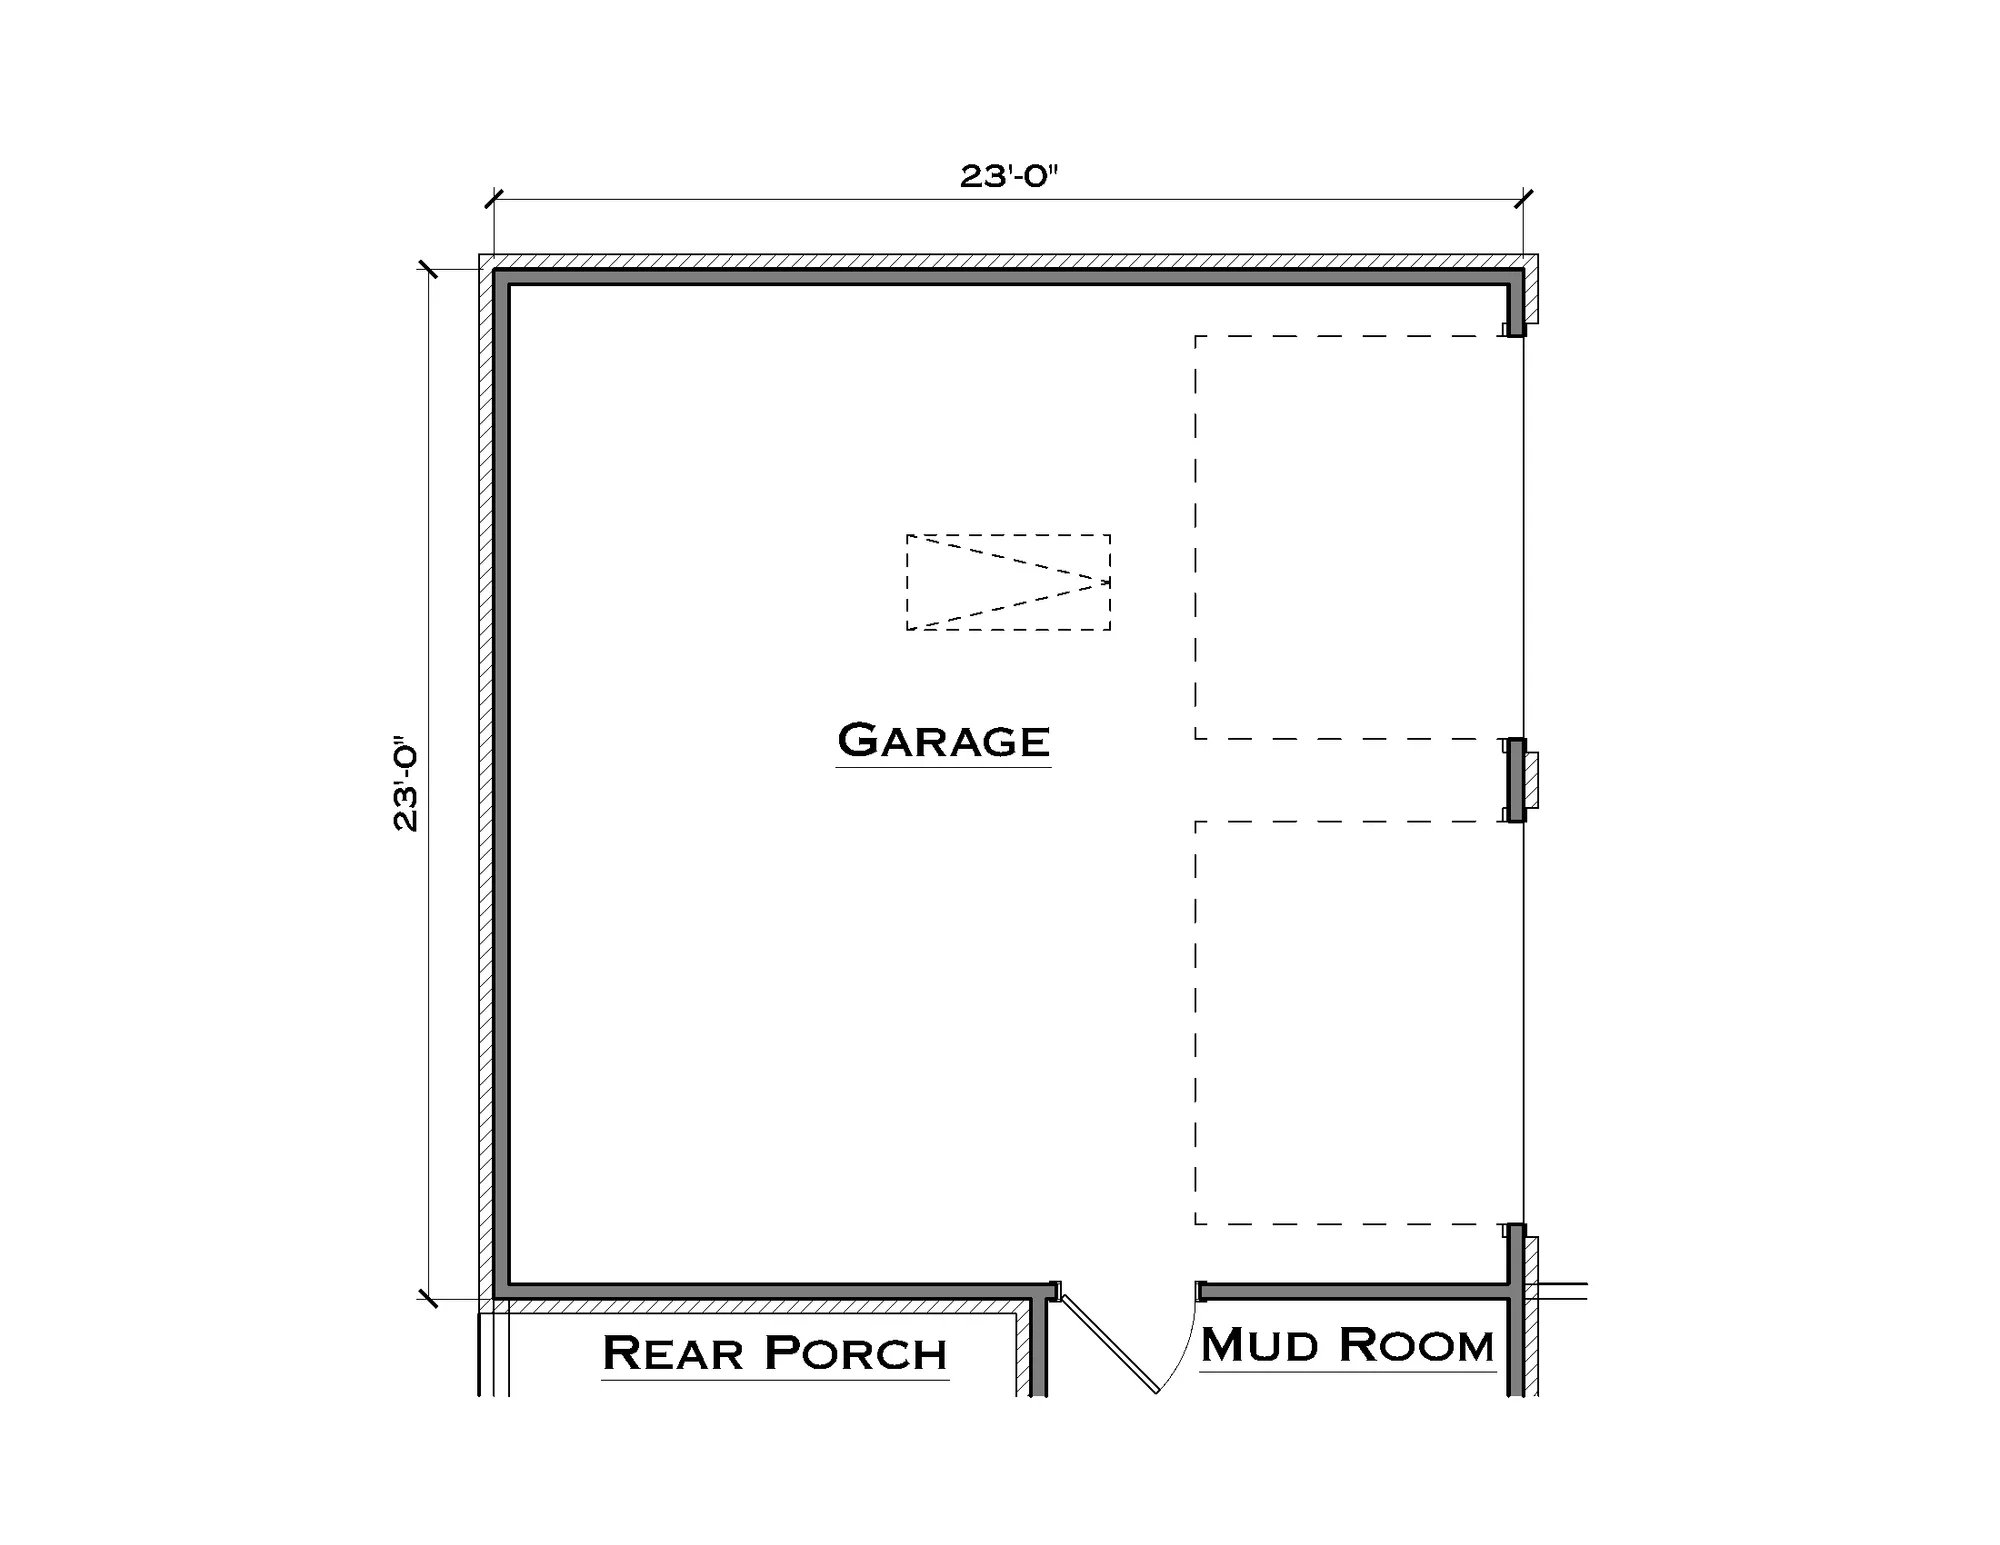 Two 9ft Garage Door Option - undefined